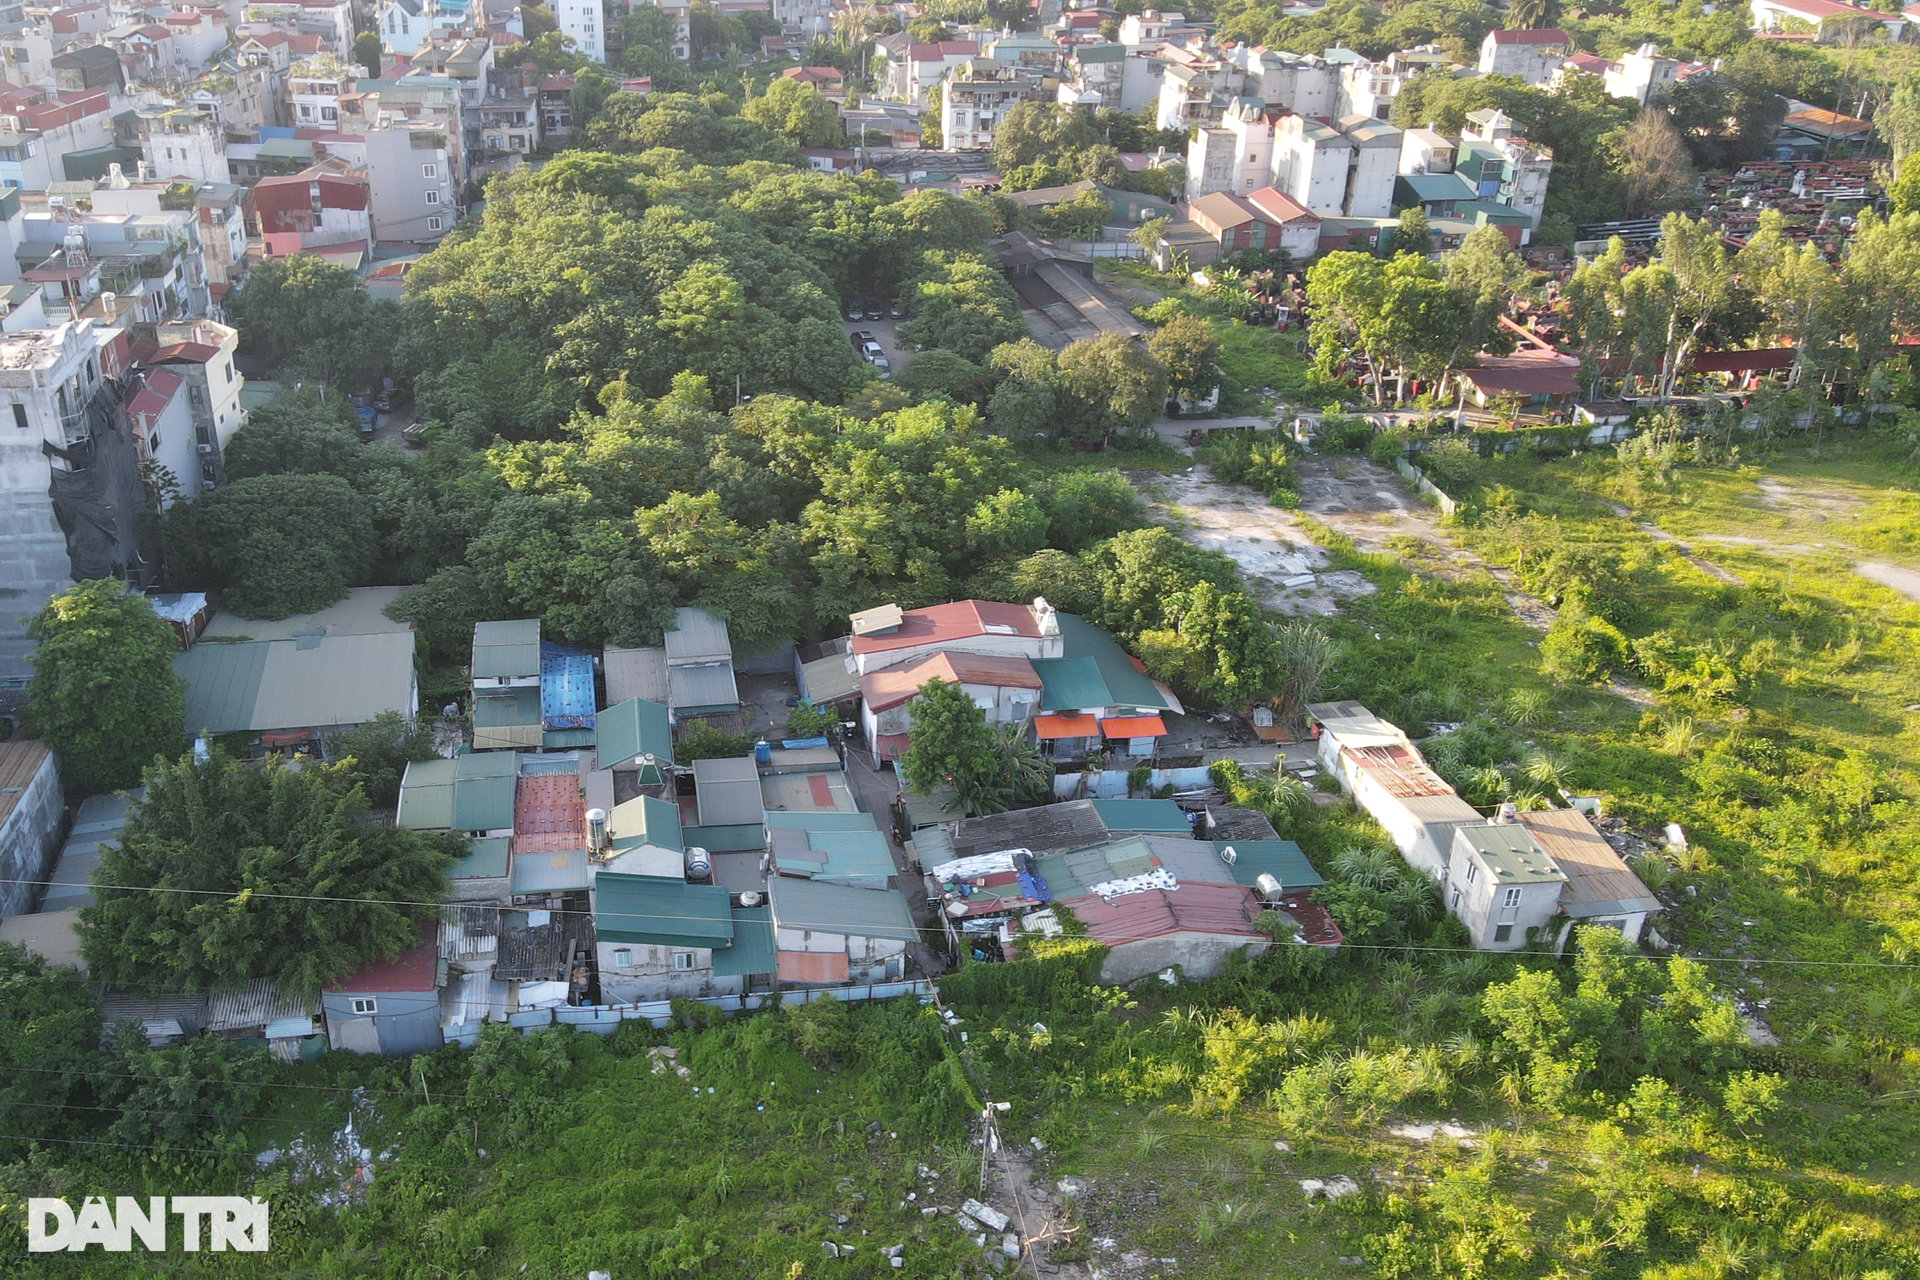 Cận cảnh dự án khu đô thị ôm đất vàng Thủ đô bỏ hoang gần 2 thập kỷ - 3